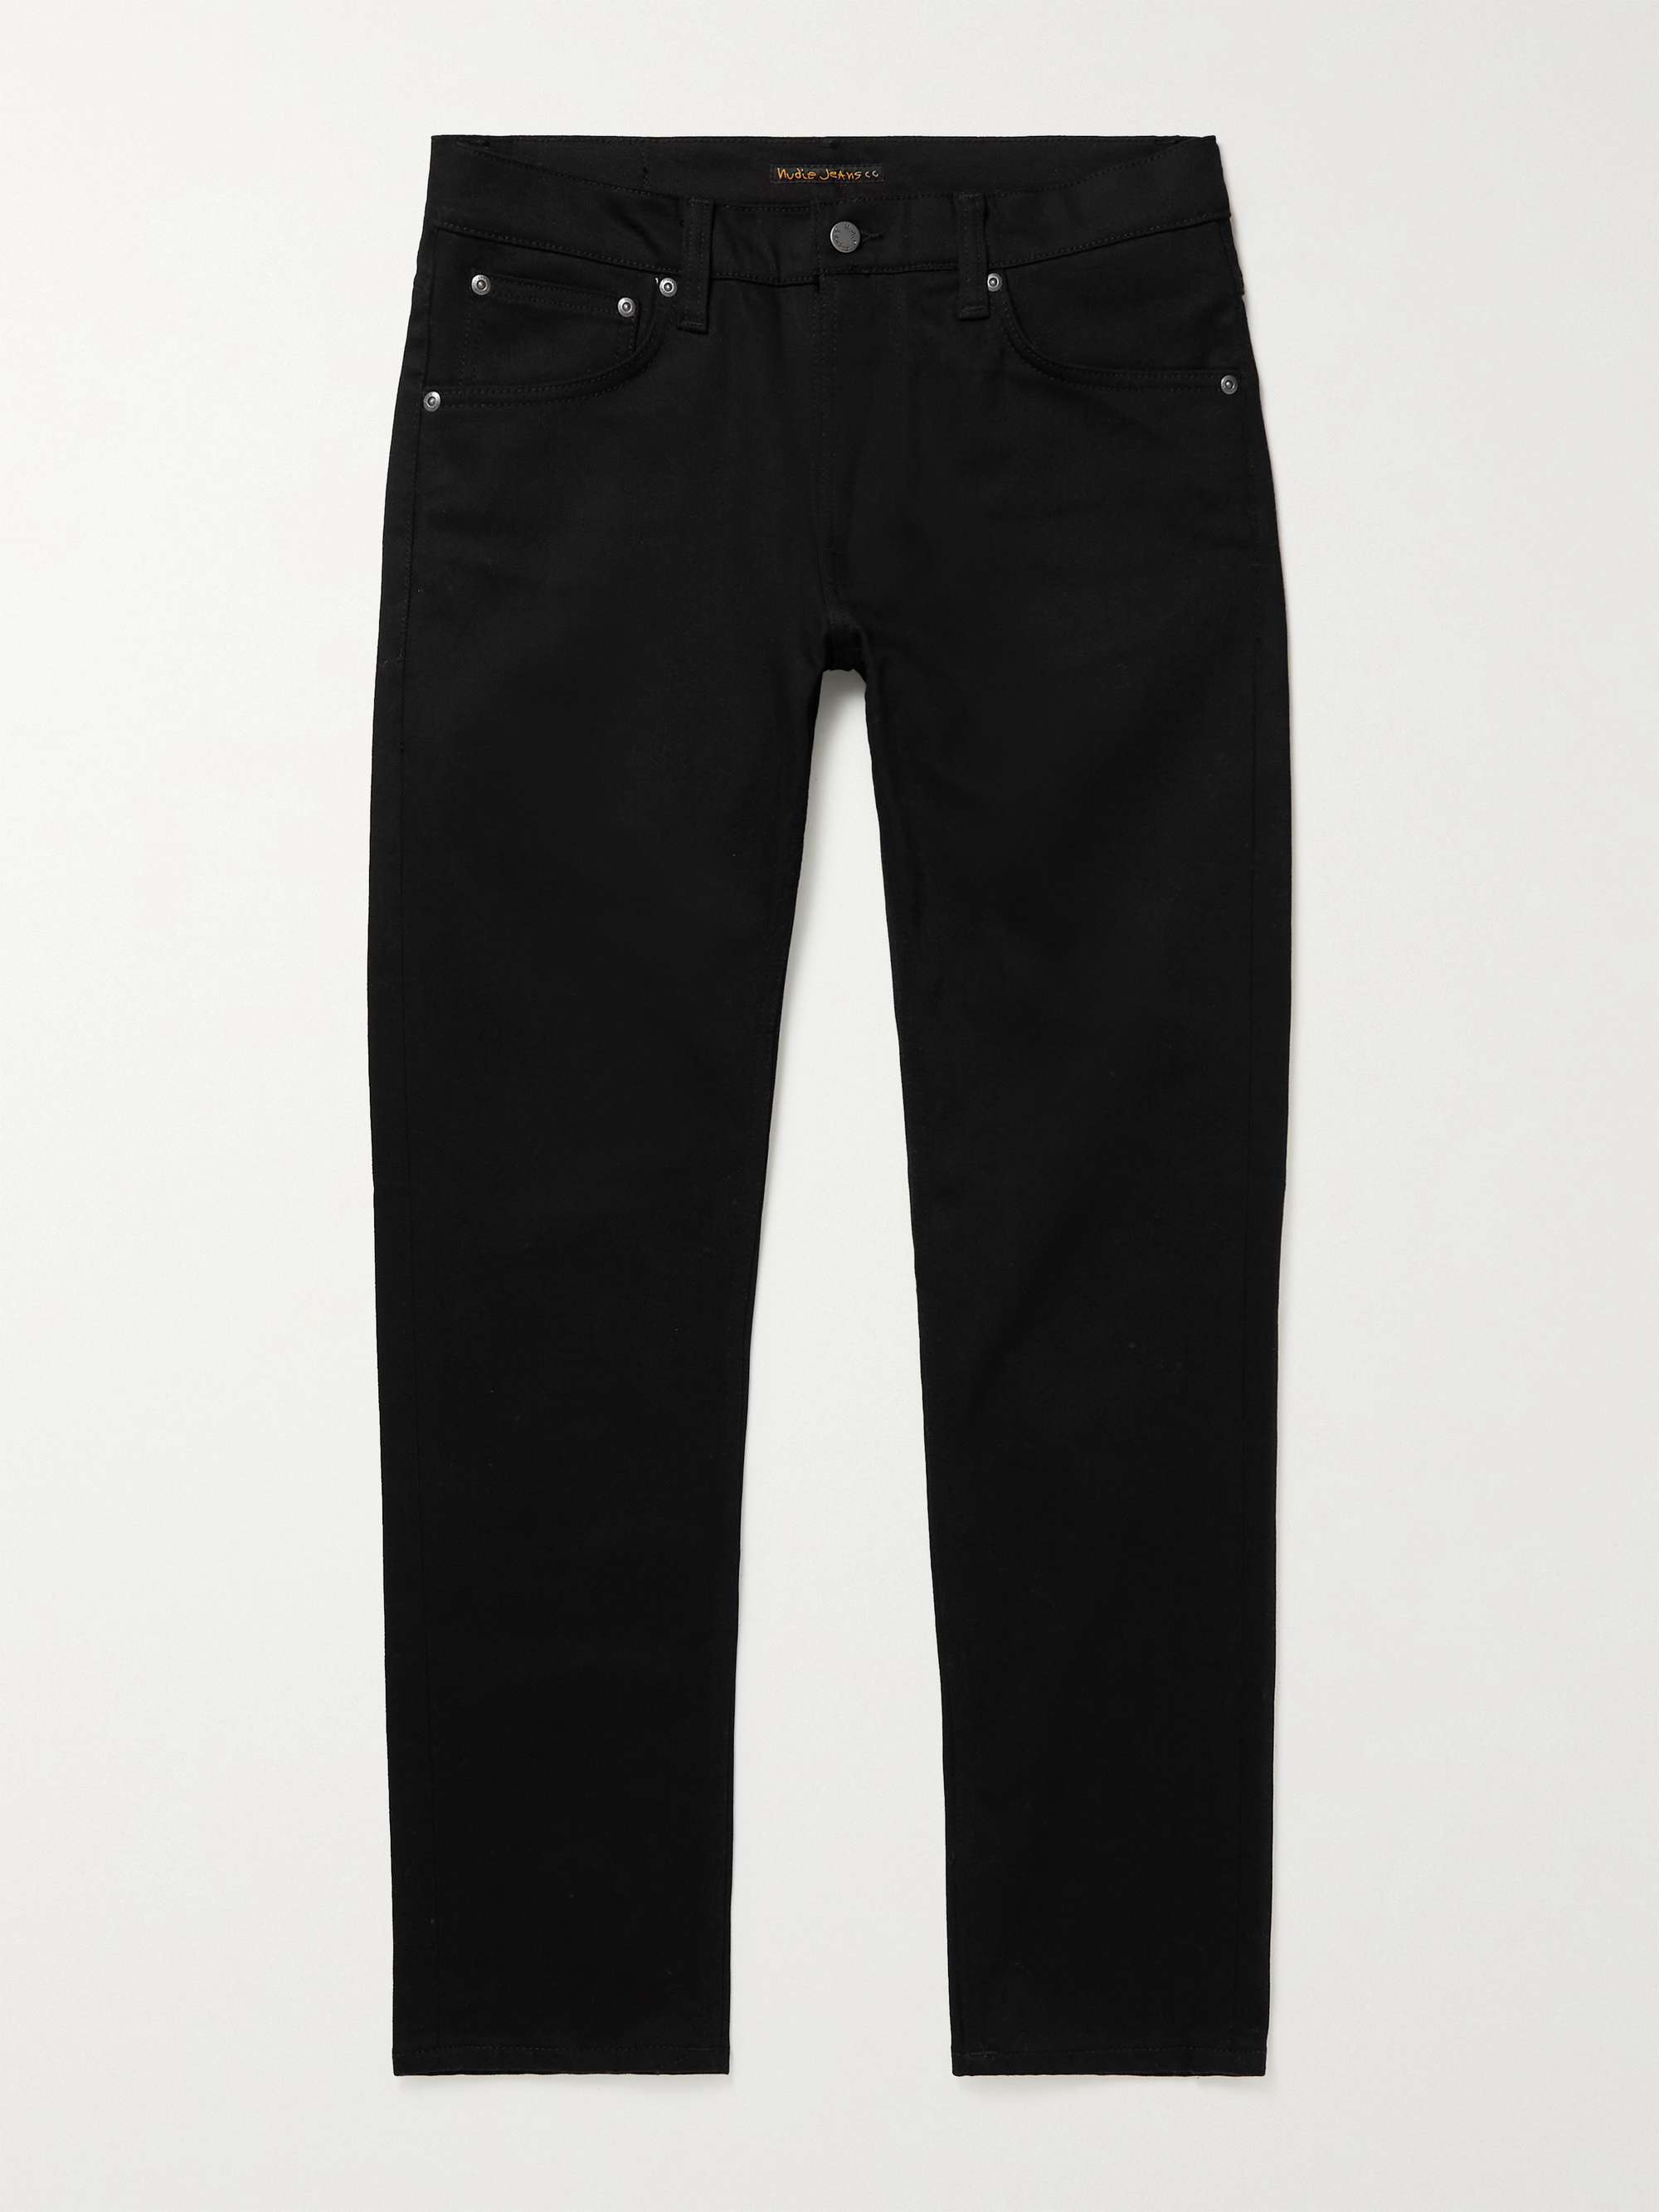 Black Lean Dean Slim-Fit Organic Jeans | NUDIE JEANS | MR PORTER